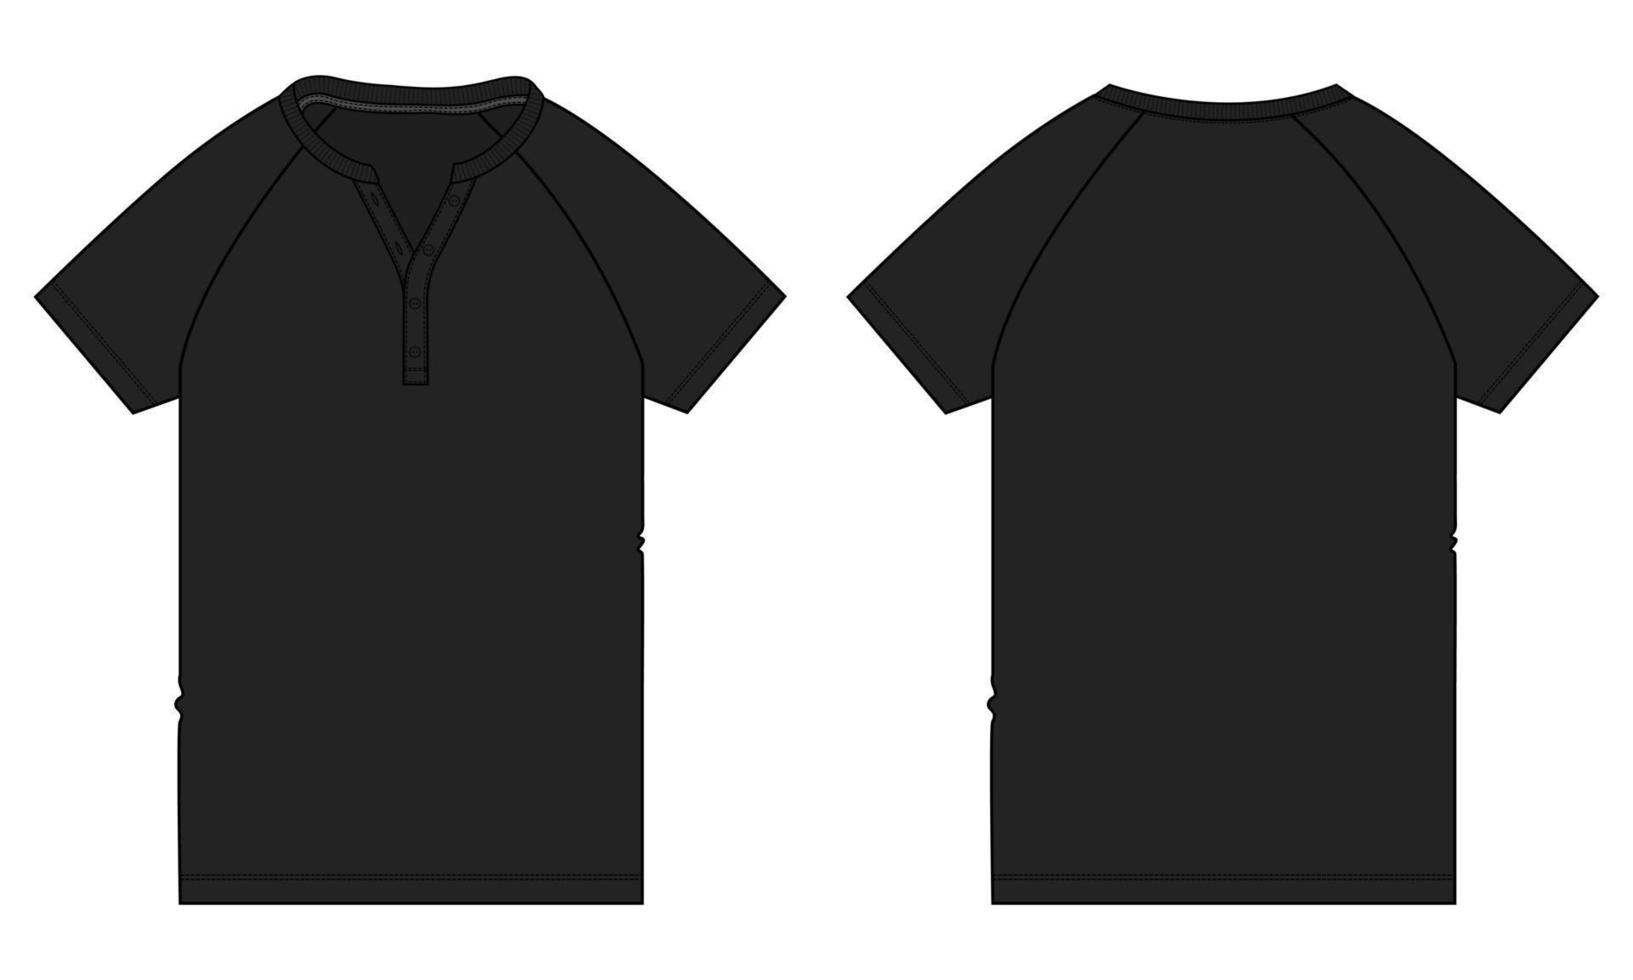 t-shirt raglan à manches courtes mode technique croquis plat illustration vectorielle modèle de couleur noire vues avant et arrière. vecteur